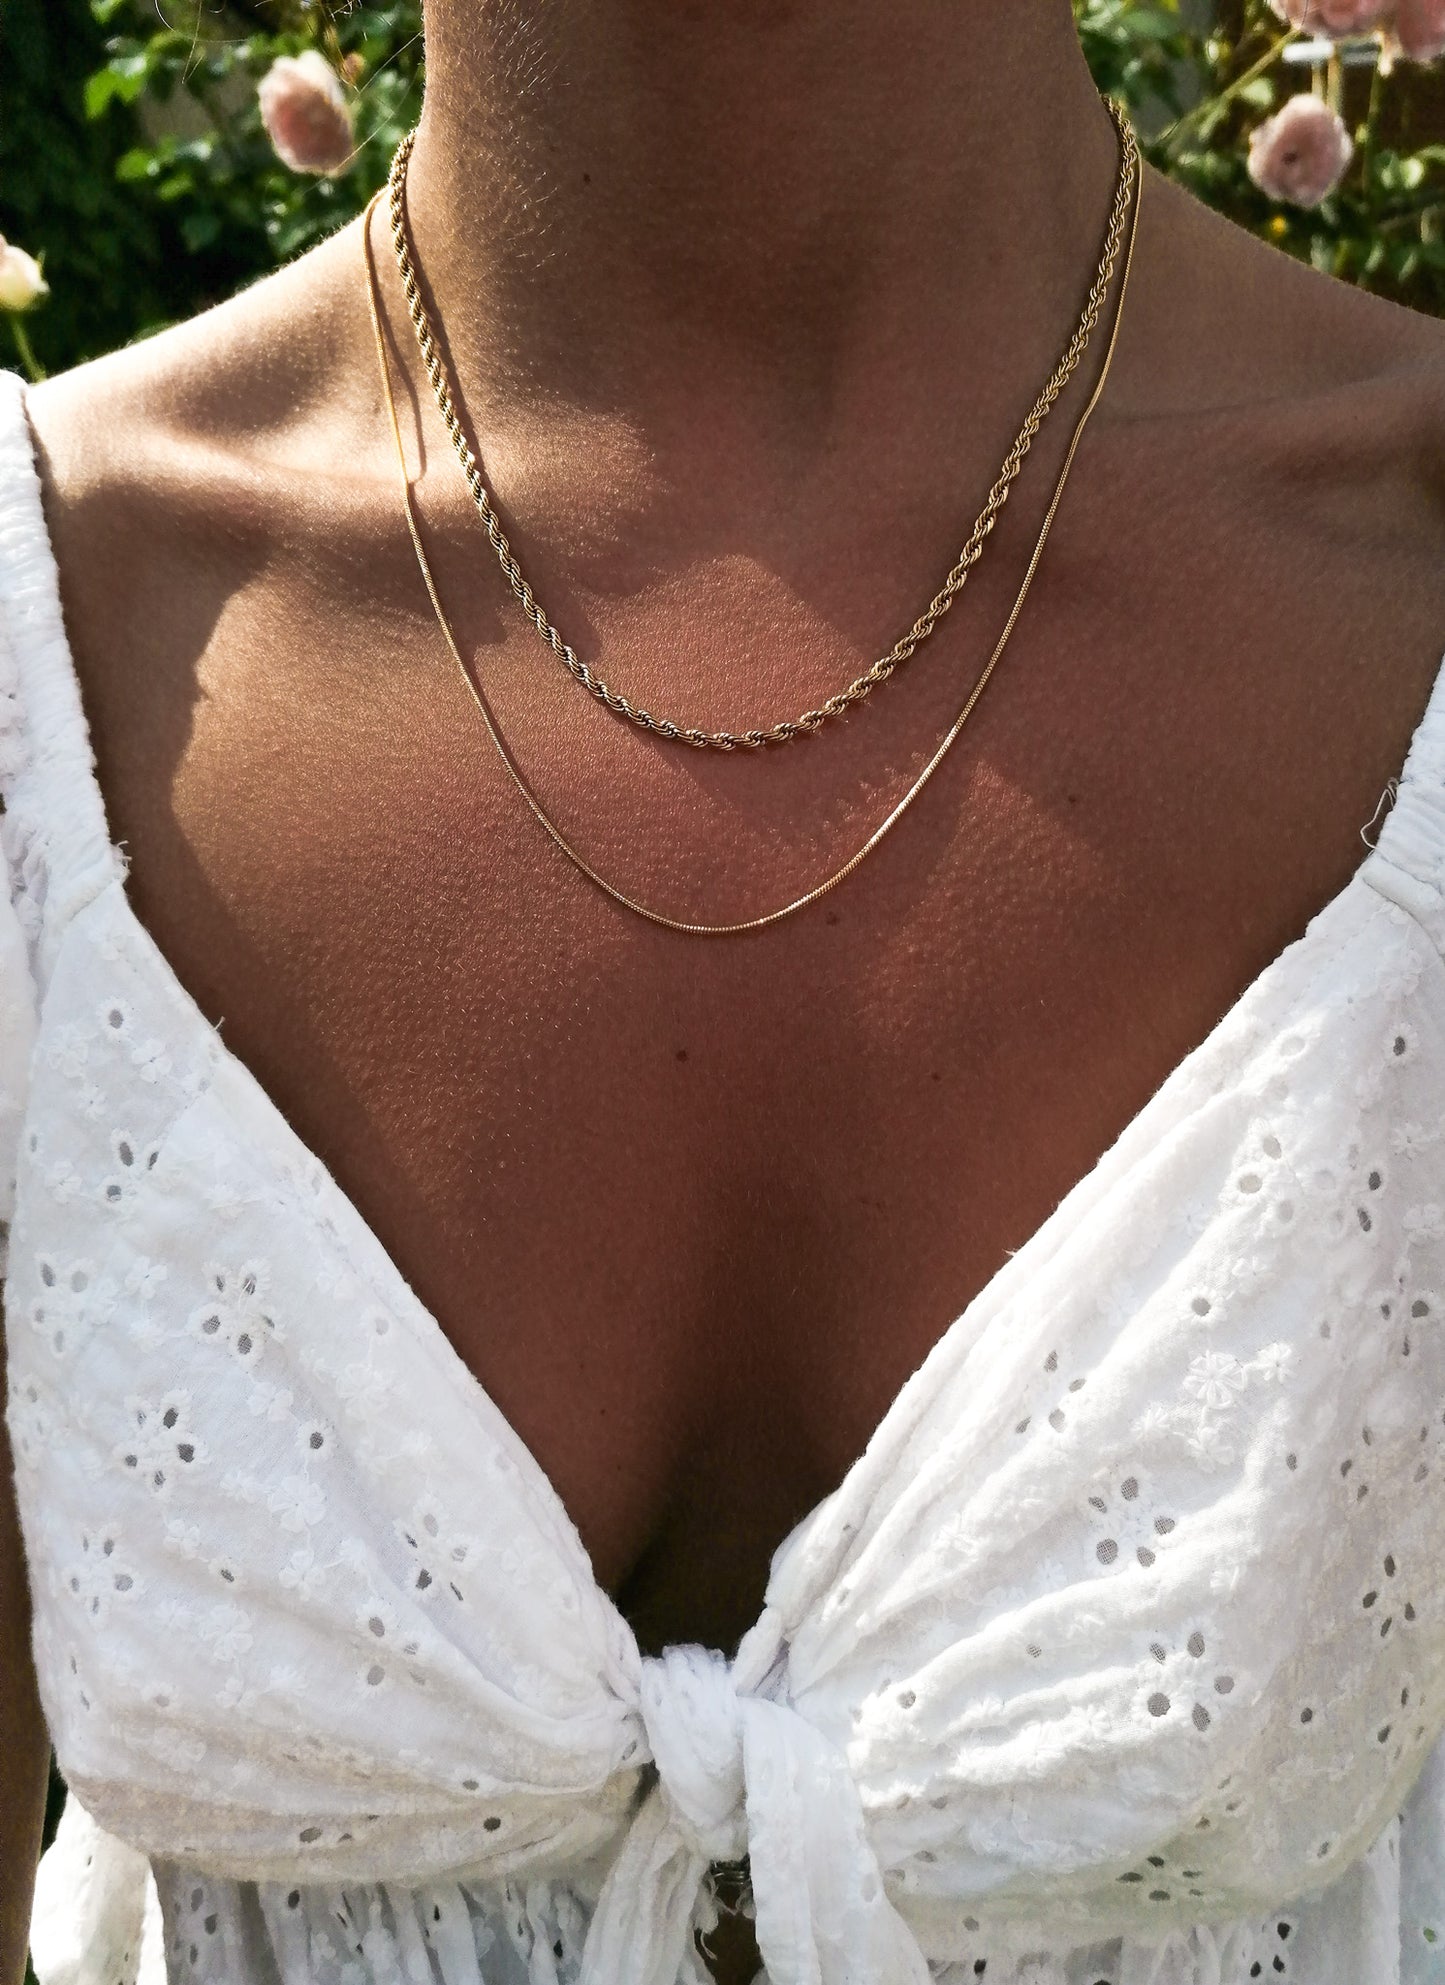 Milano necklace